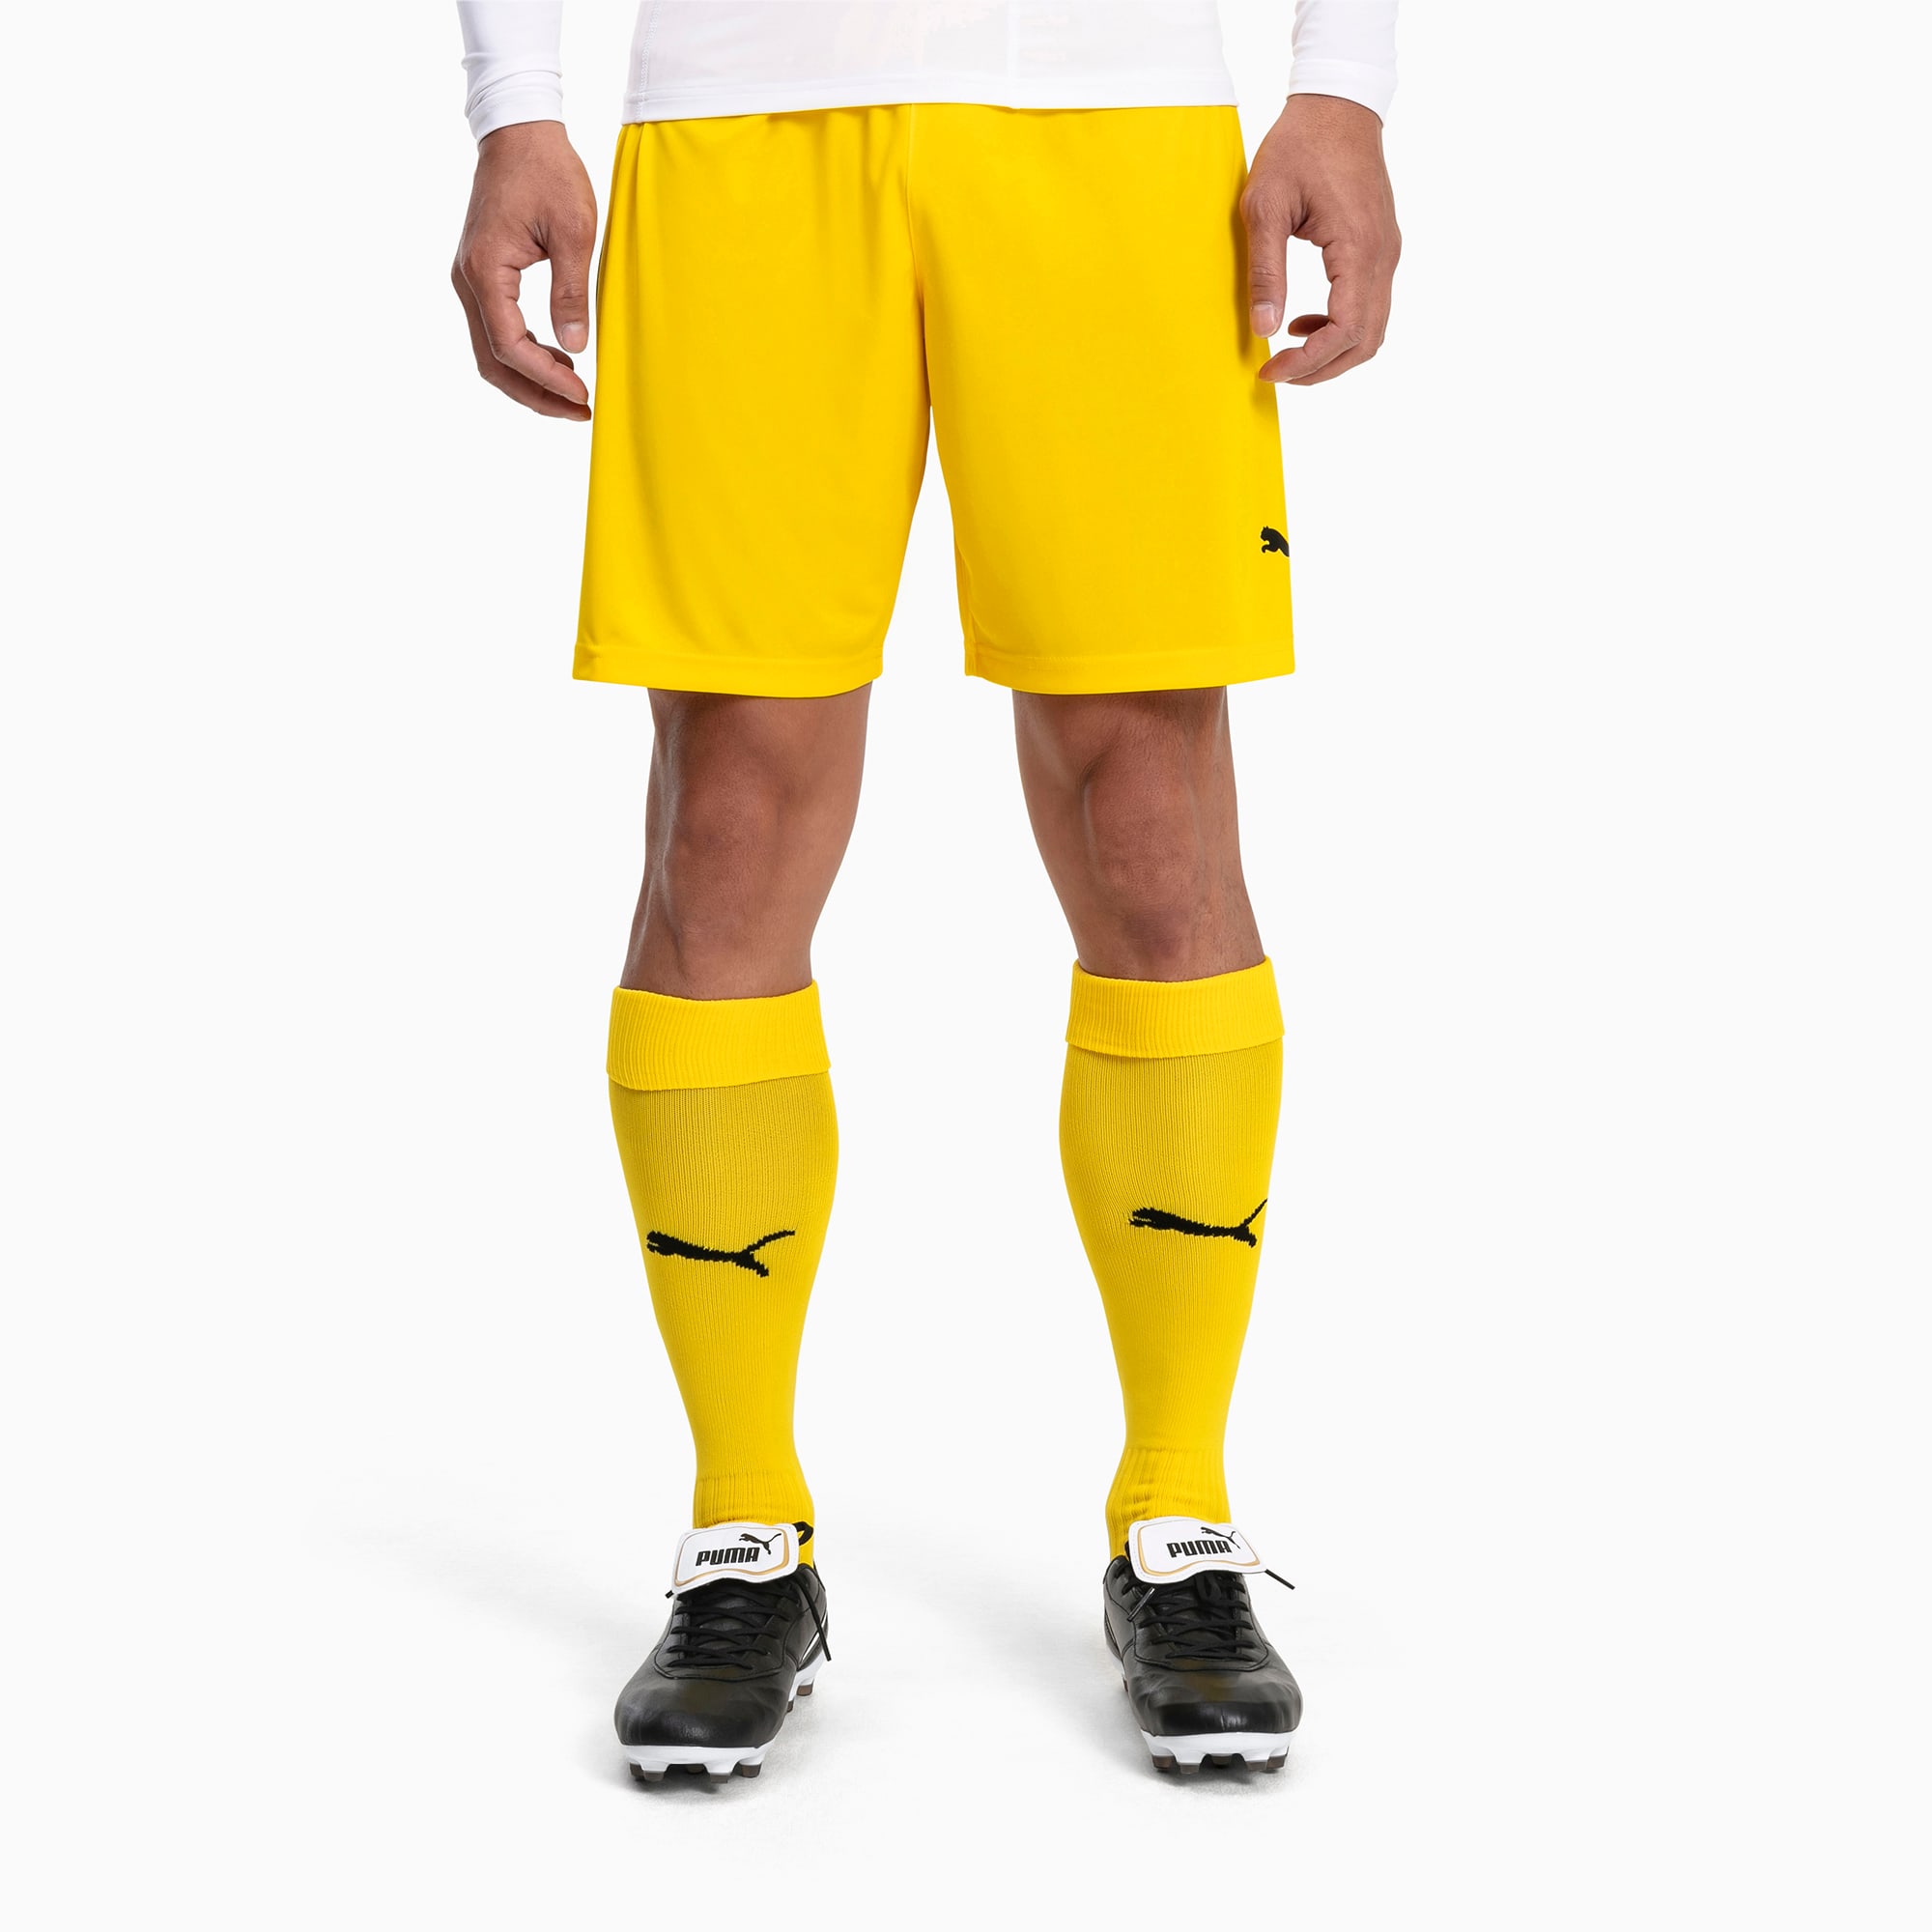 PUMA Chaussettes Football LIGA Core pour Homme, Jaune/Noir, Taille 39-42, Vêtements